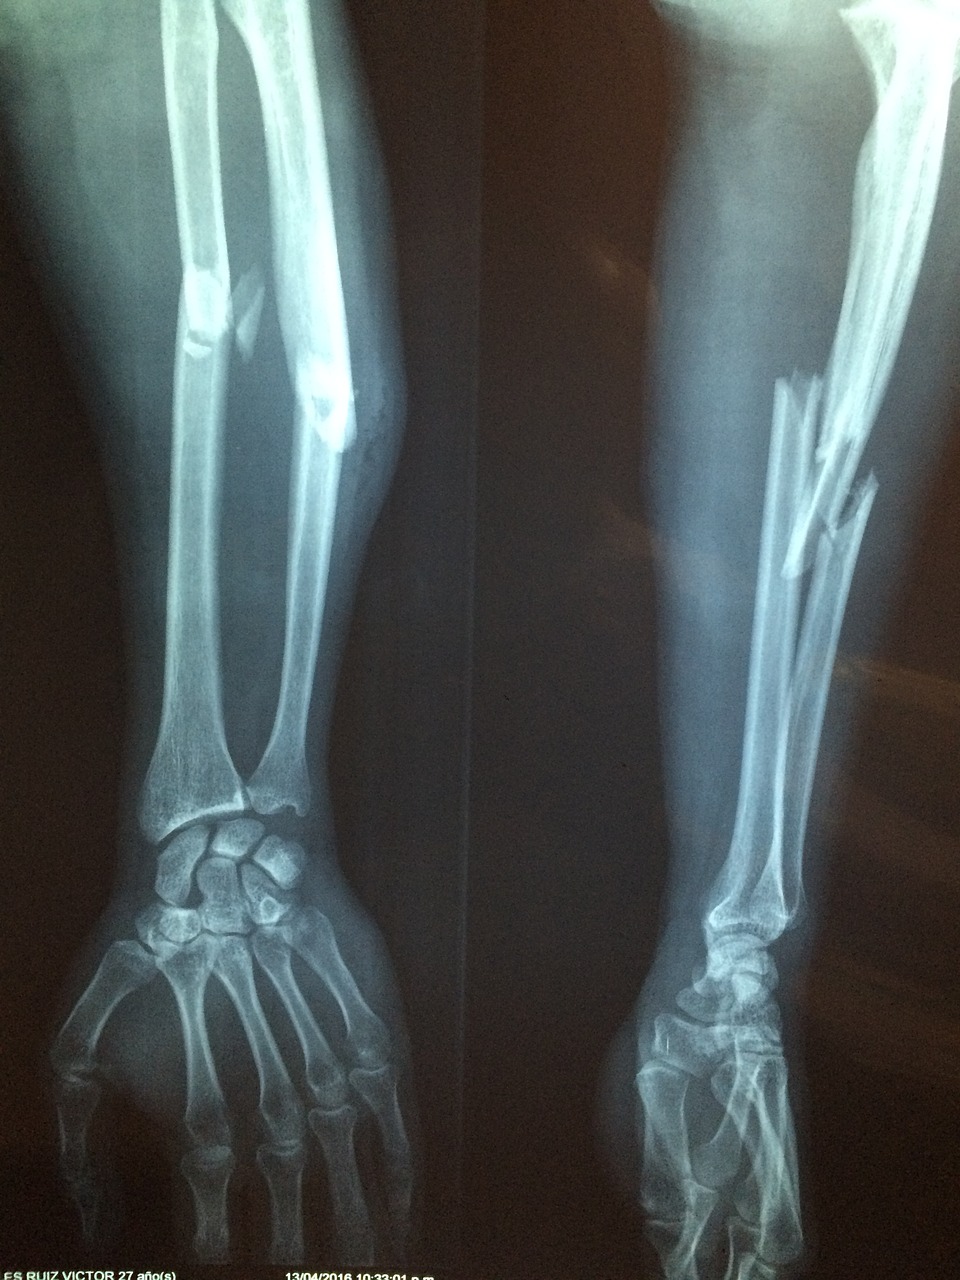 fracture bone xray skeleton free photo